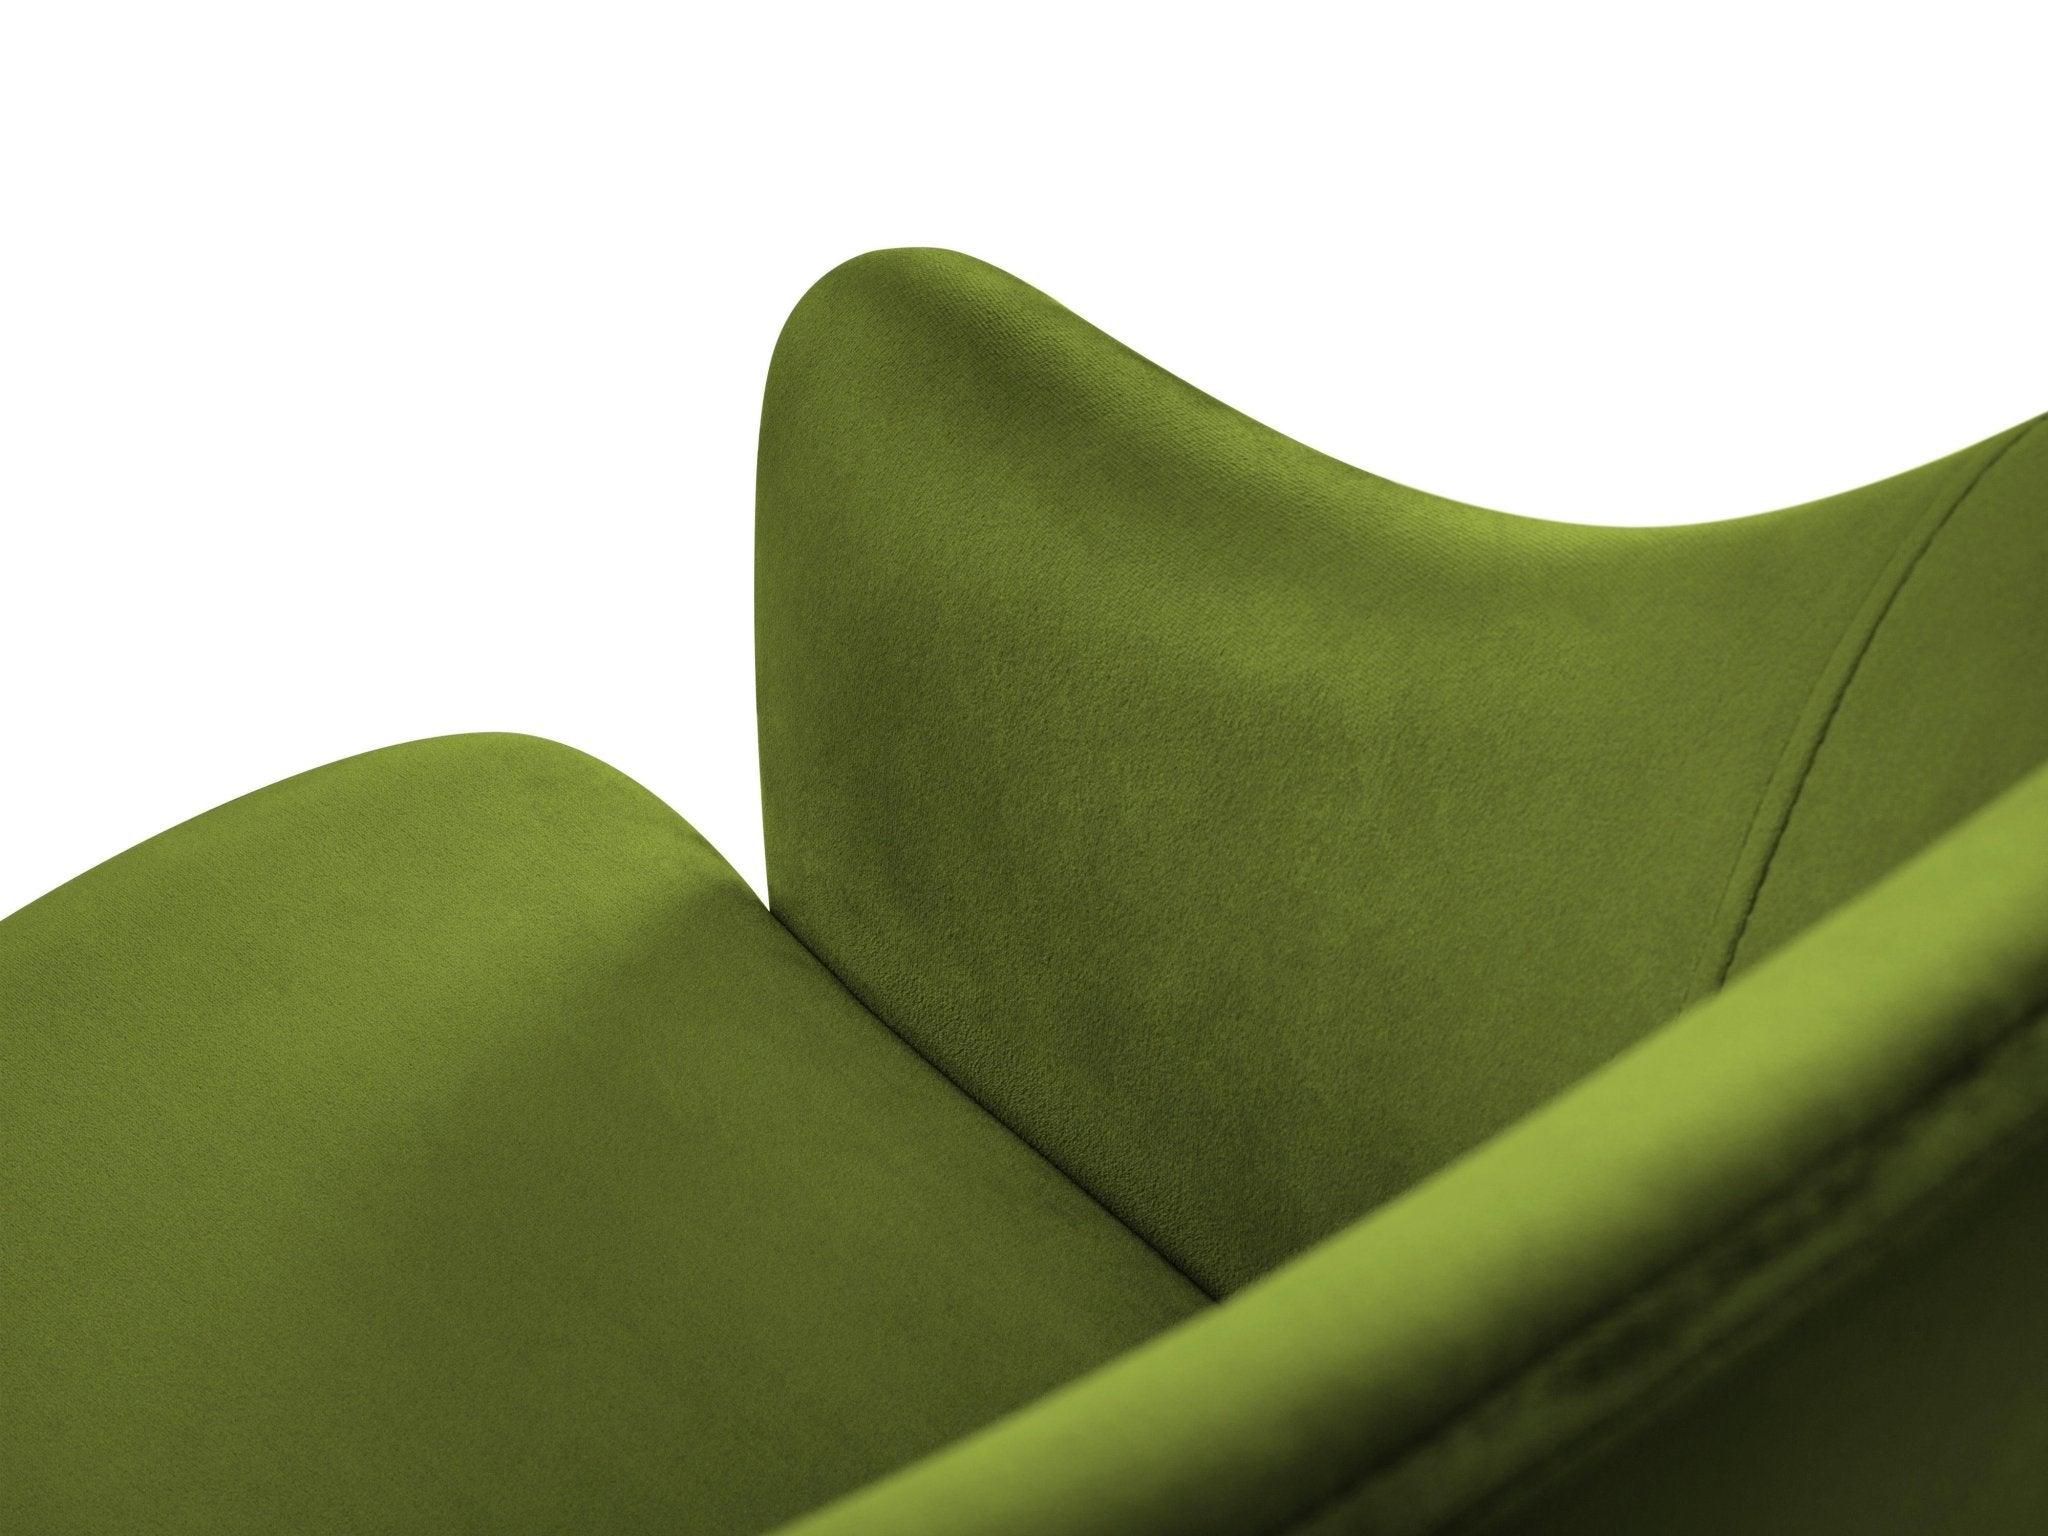 Krzesło aksamitne LYS zielony CXL by Christian Lacroix    Eye on Design